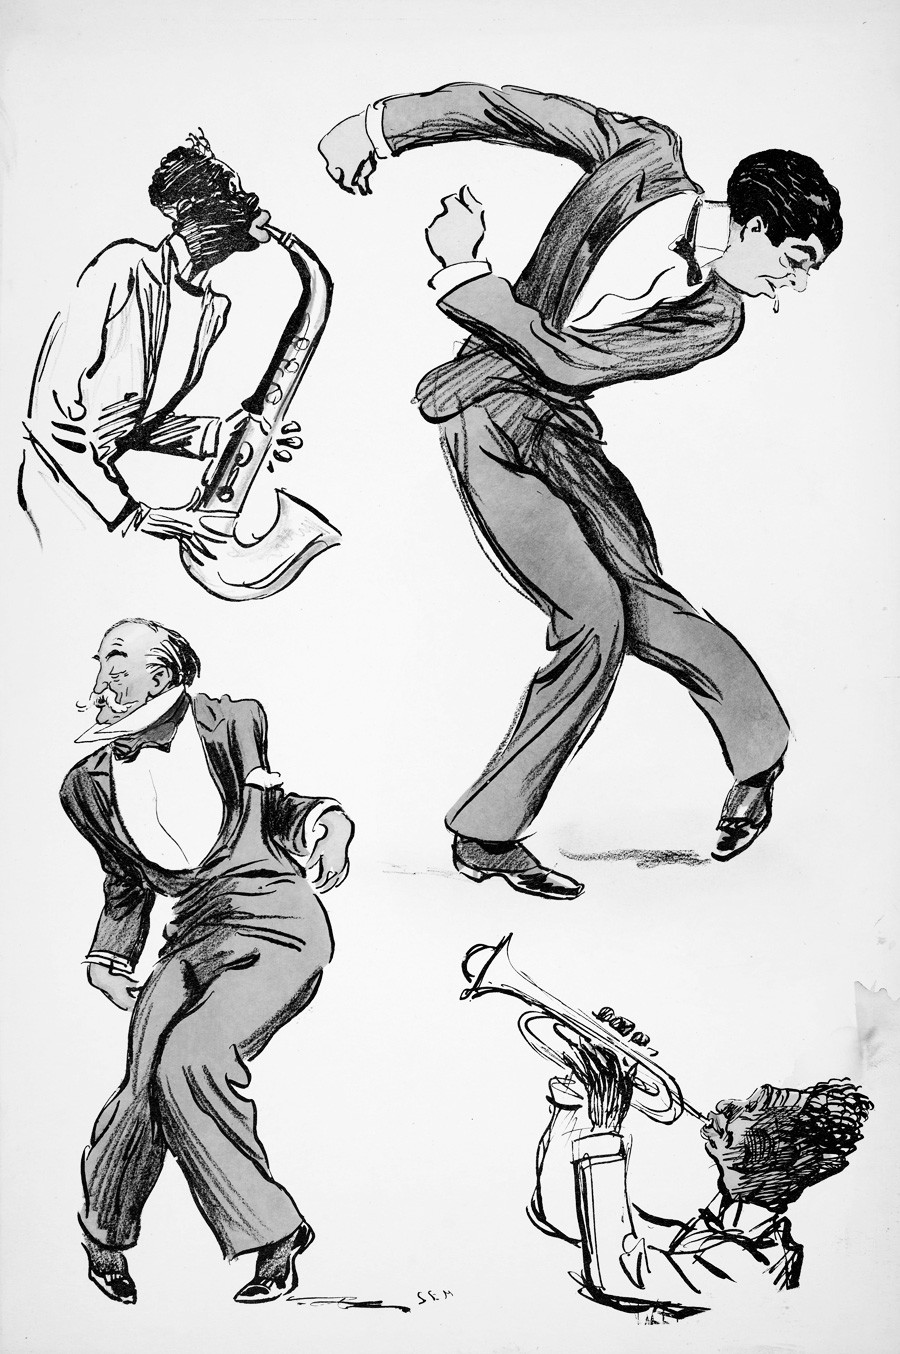 スーツを着た二人の男性は踊り、二人のミュージシャンがサクソフォーンとトランペットを弾く。「ホワイト・ボトムズ」、1927年出版。